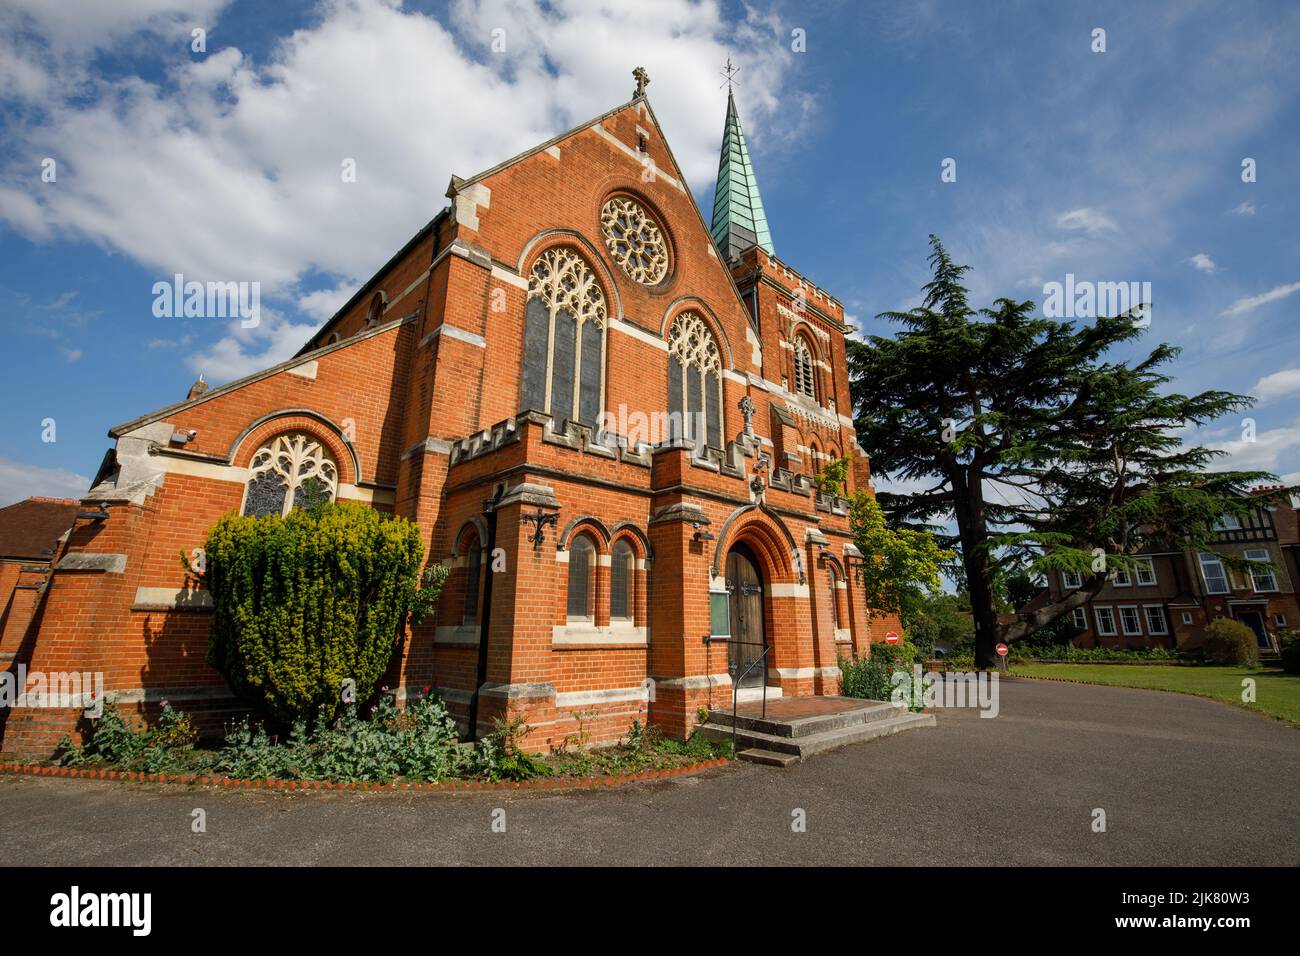 L'église Saint-Pierre, Une église victorienne construite en brique rouge. Staines-upon-Thames, site de tournage du film l'OMEN. Banque D'Images